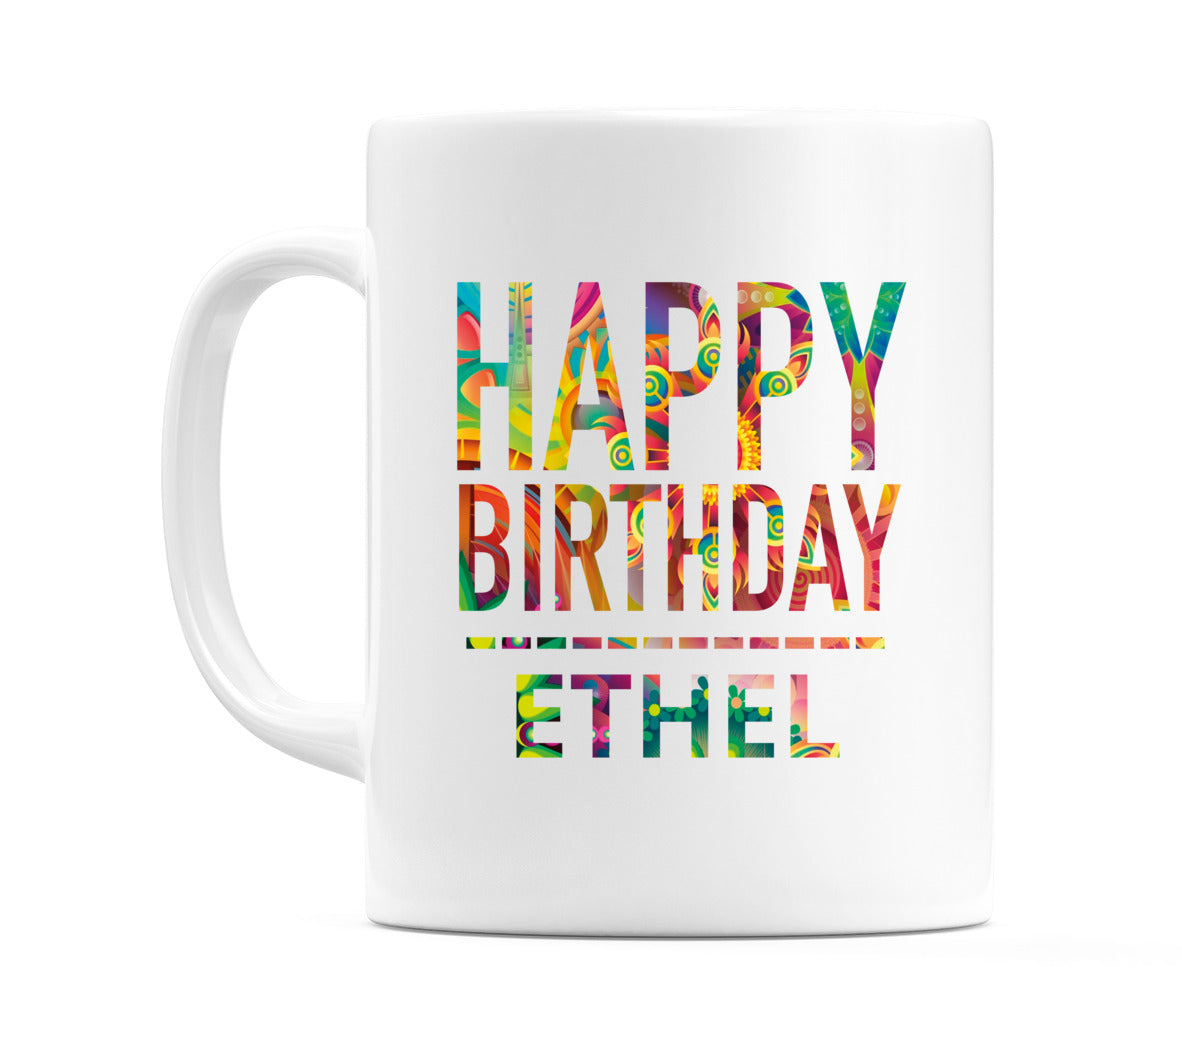 Happy Birthday Ethel (Tie Dye Effect) Mug Cup by WeDoMugs